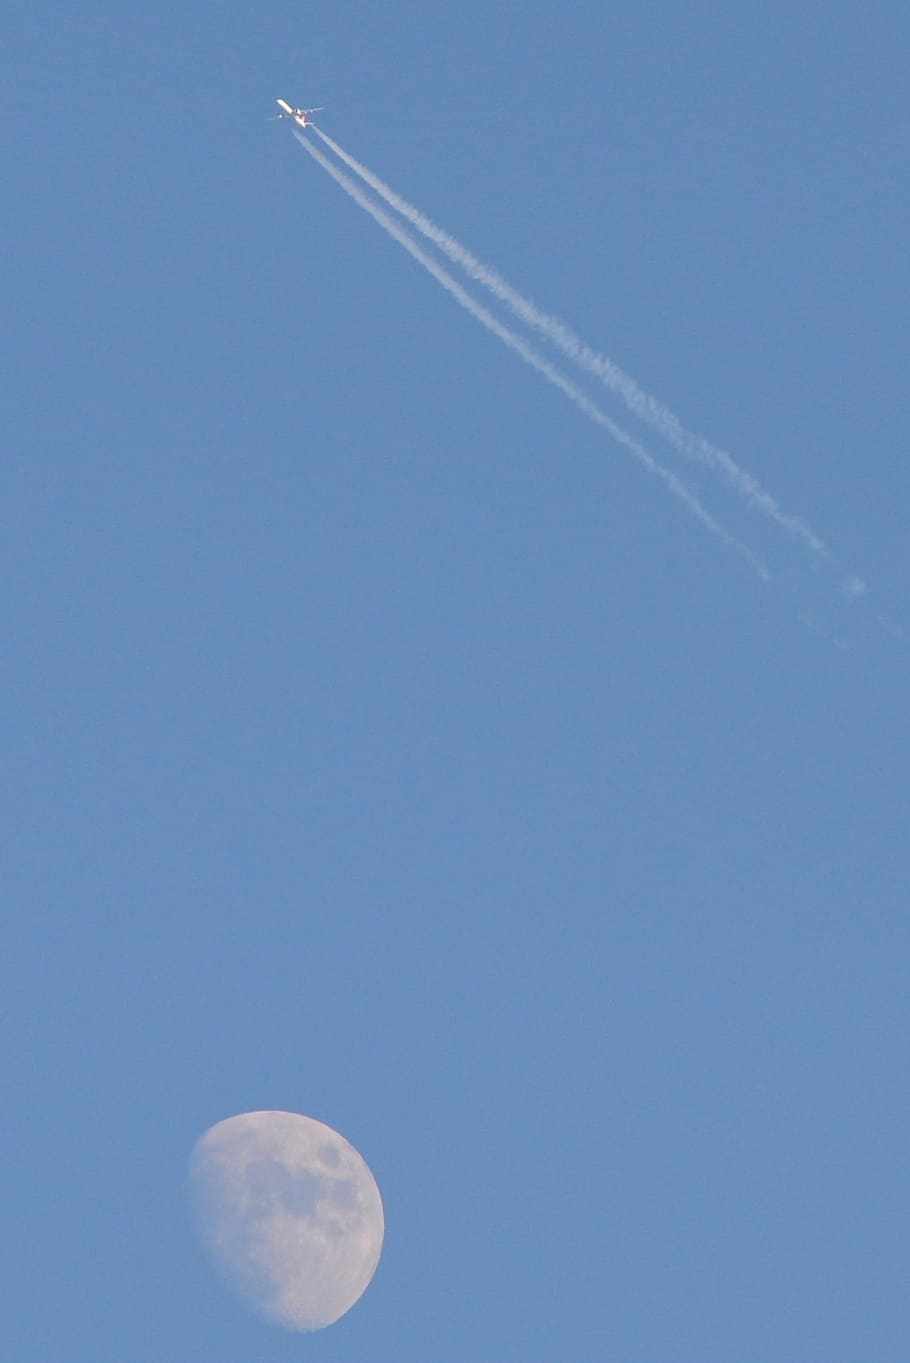 月, 飛行機, 空気, 青, 飛行, 空気車両, 空, 蒸気トレイル, 日, 航空機の翼